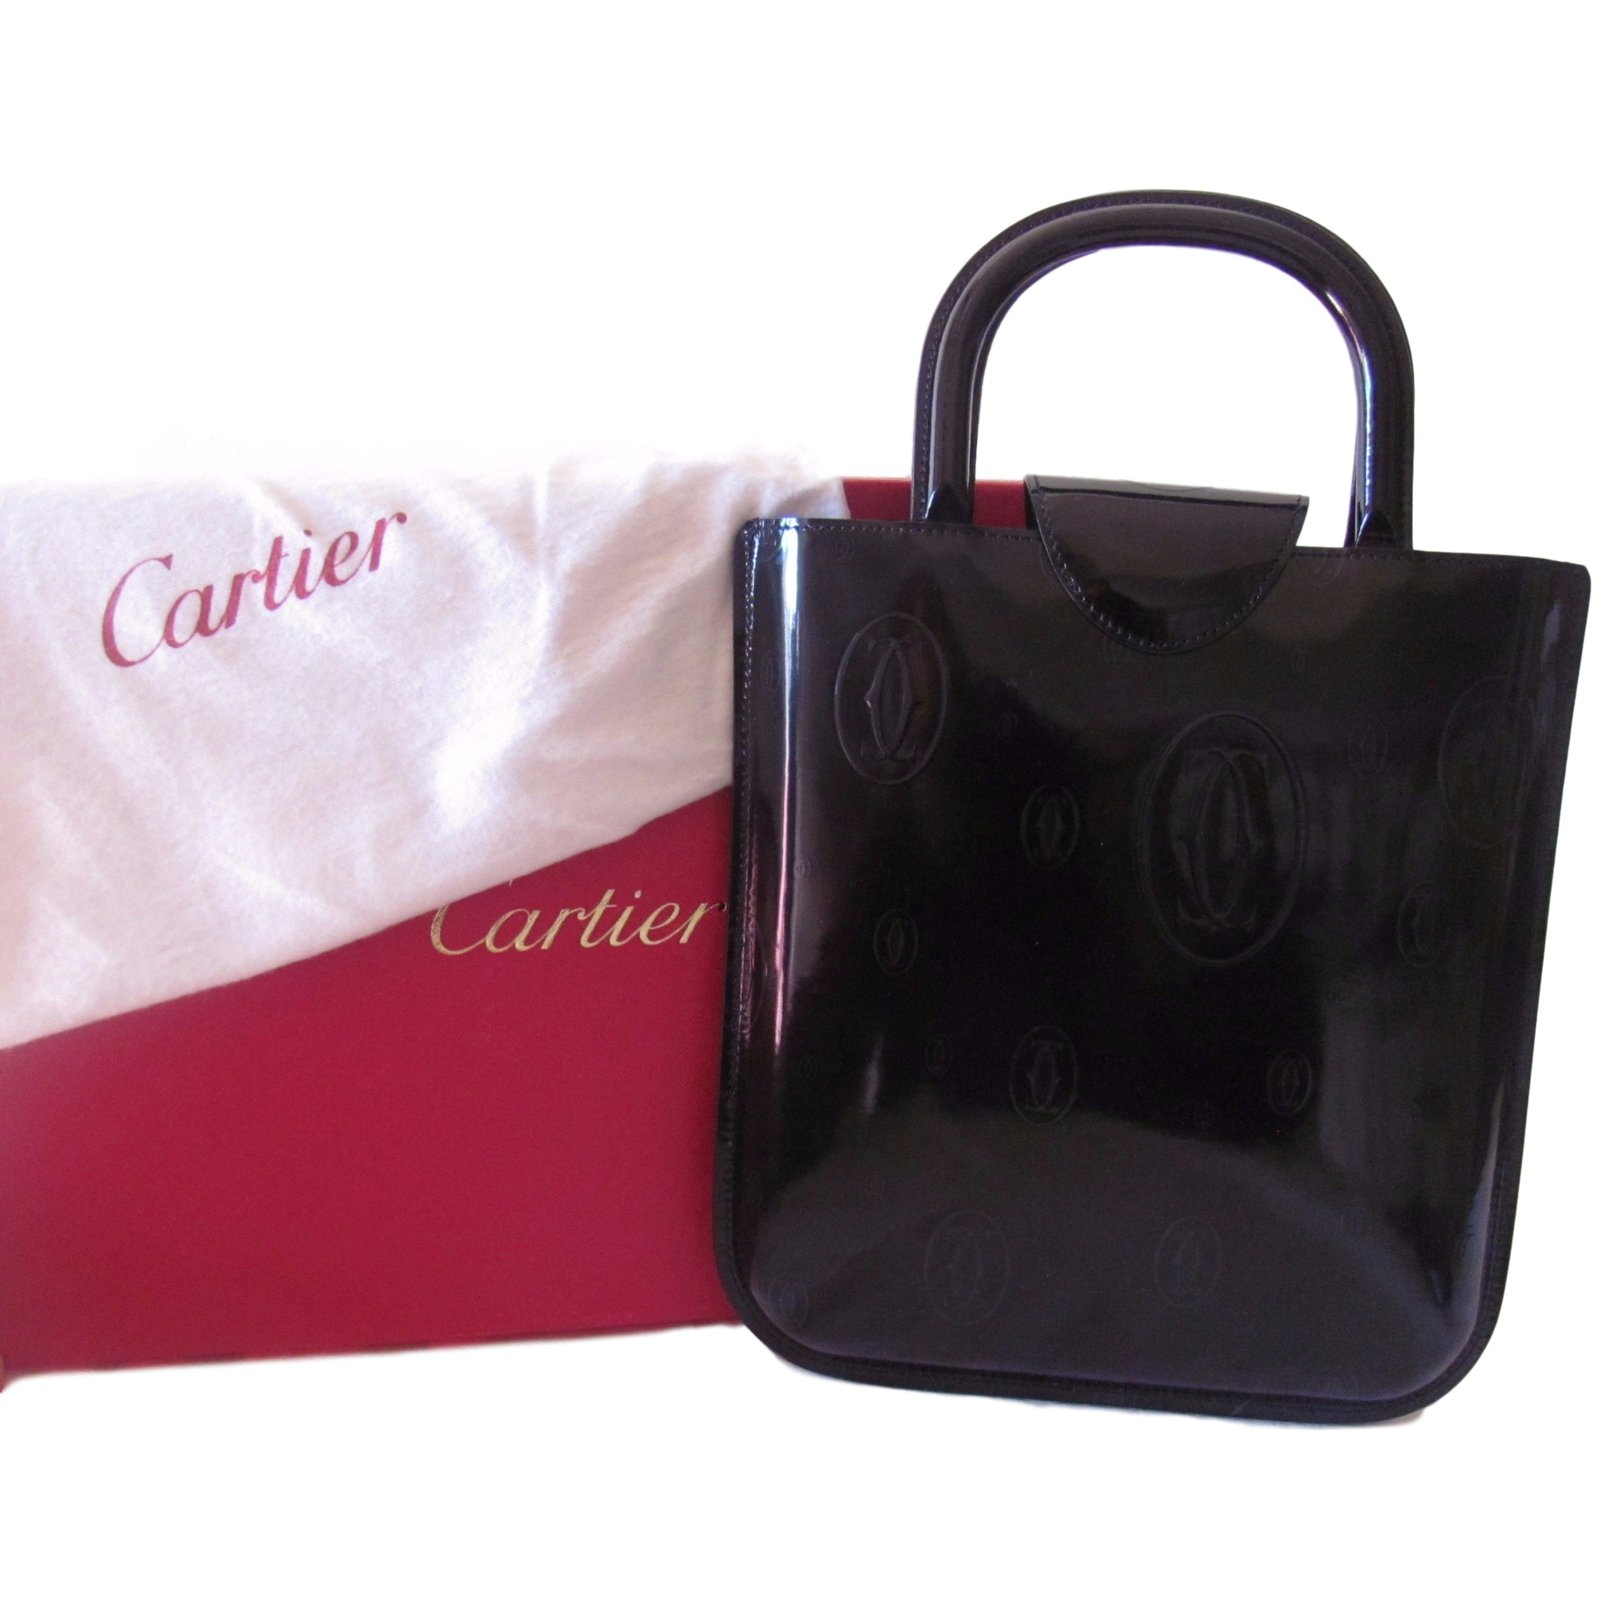 cartier bag happy birthday